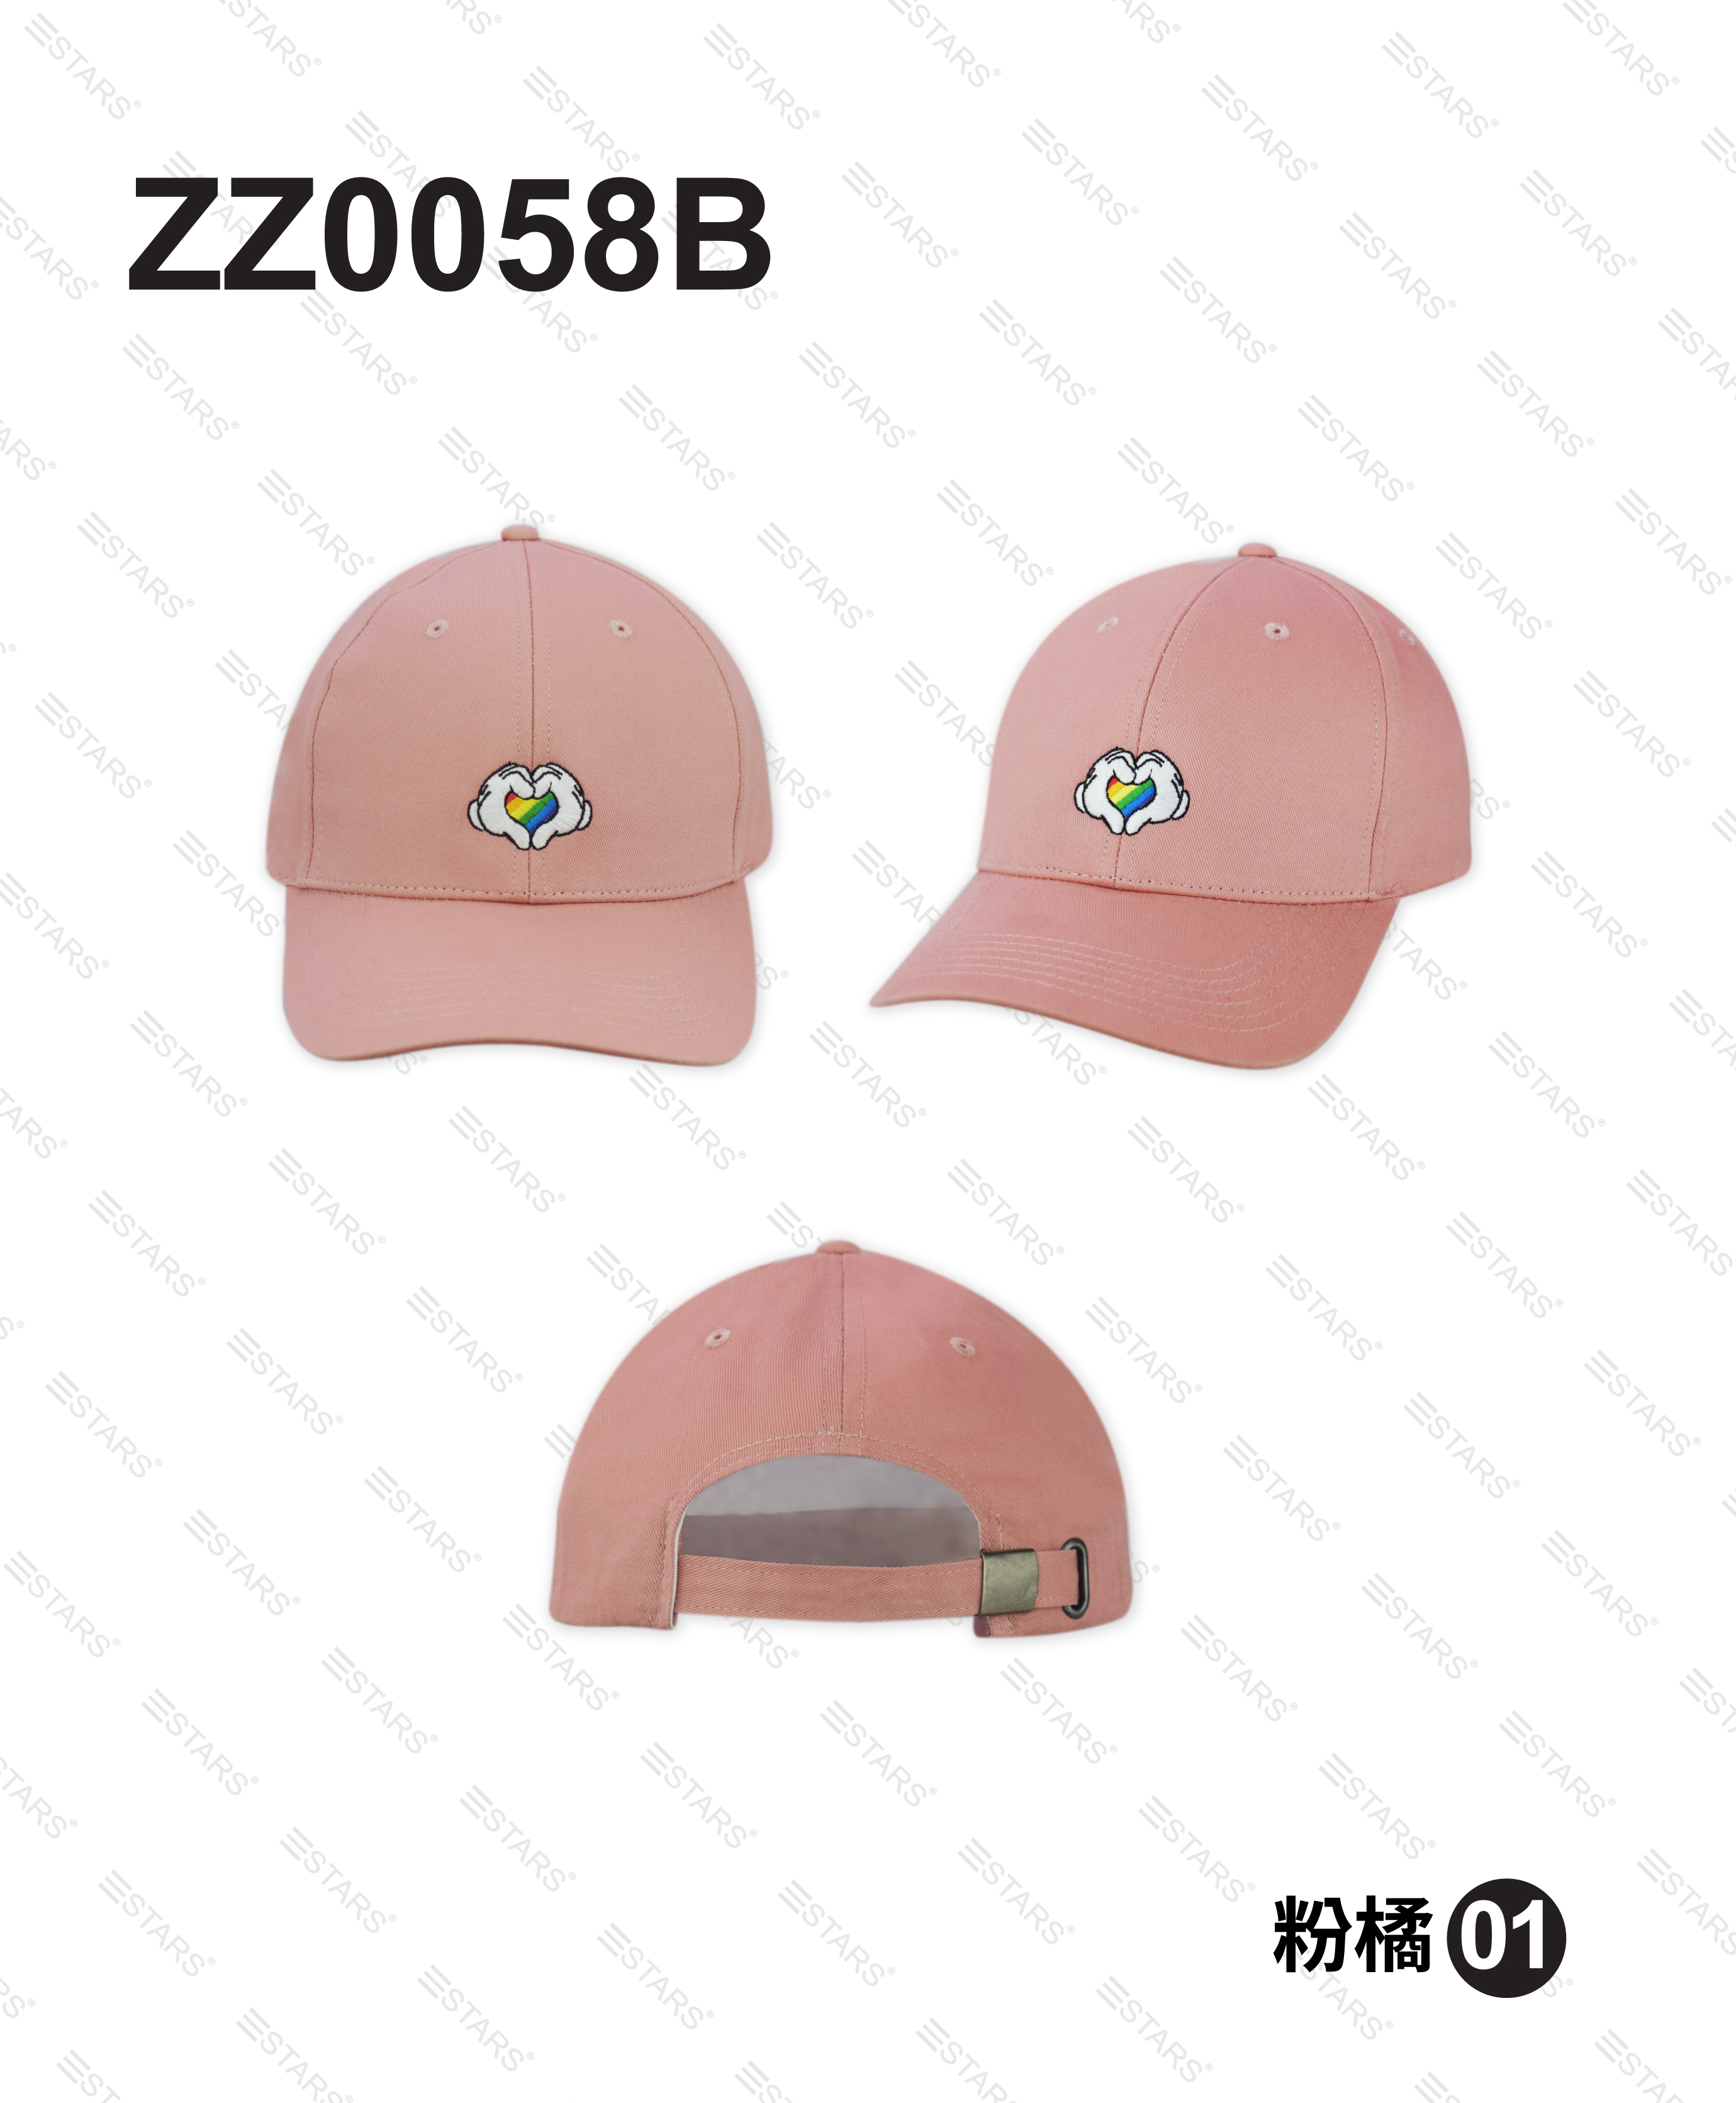 ZZ0058B 彩虹米奇球帽 (粉橘)